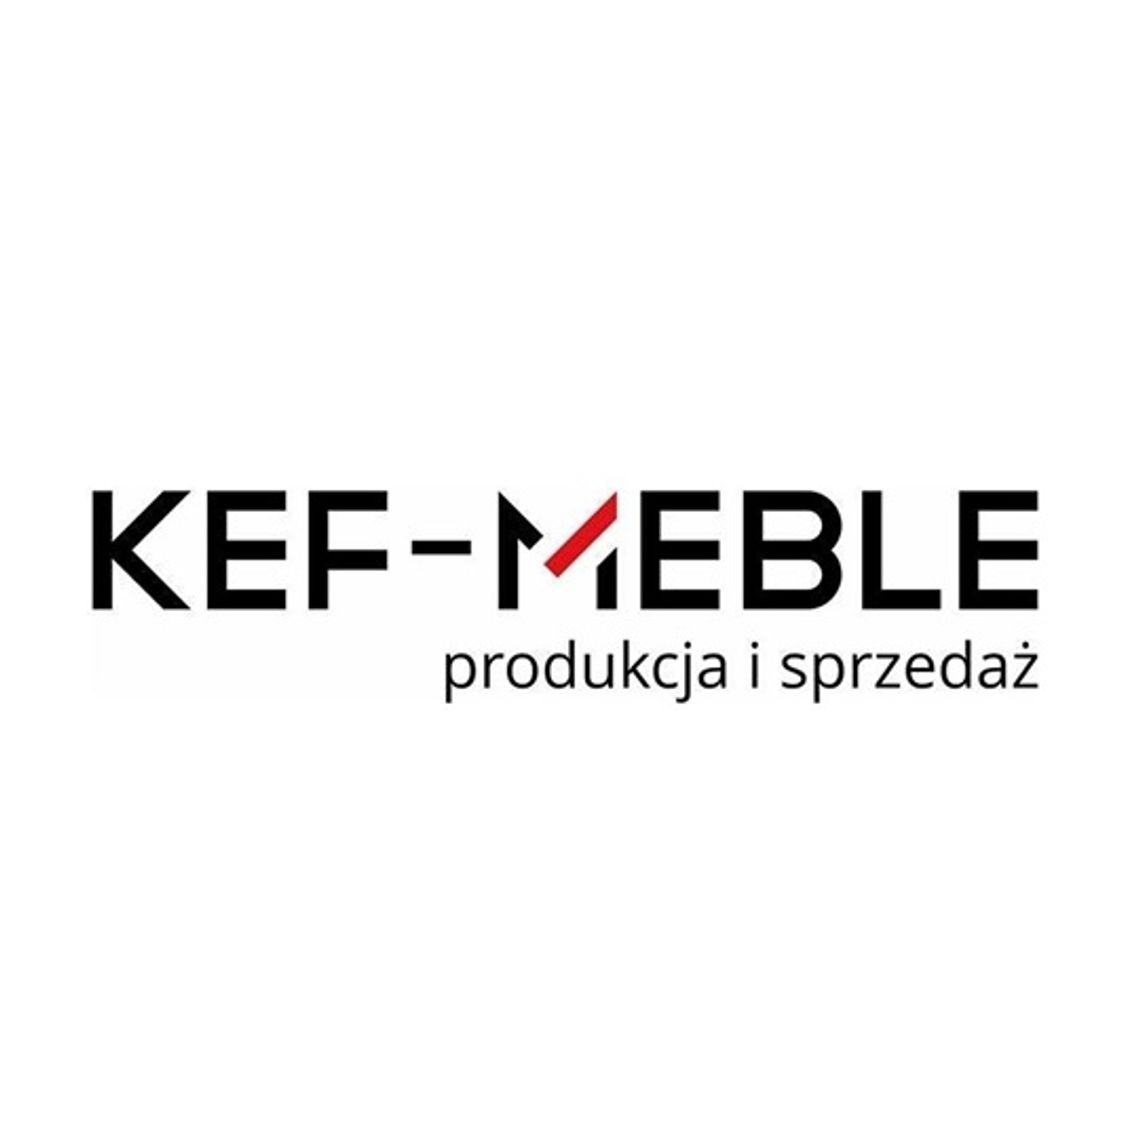 KEF-MEBLE - wygodne łóżka kontynentalne